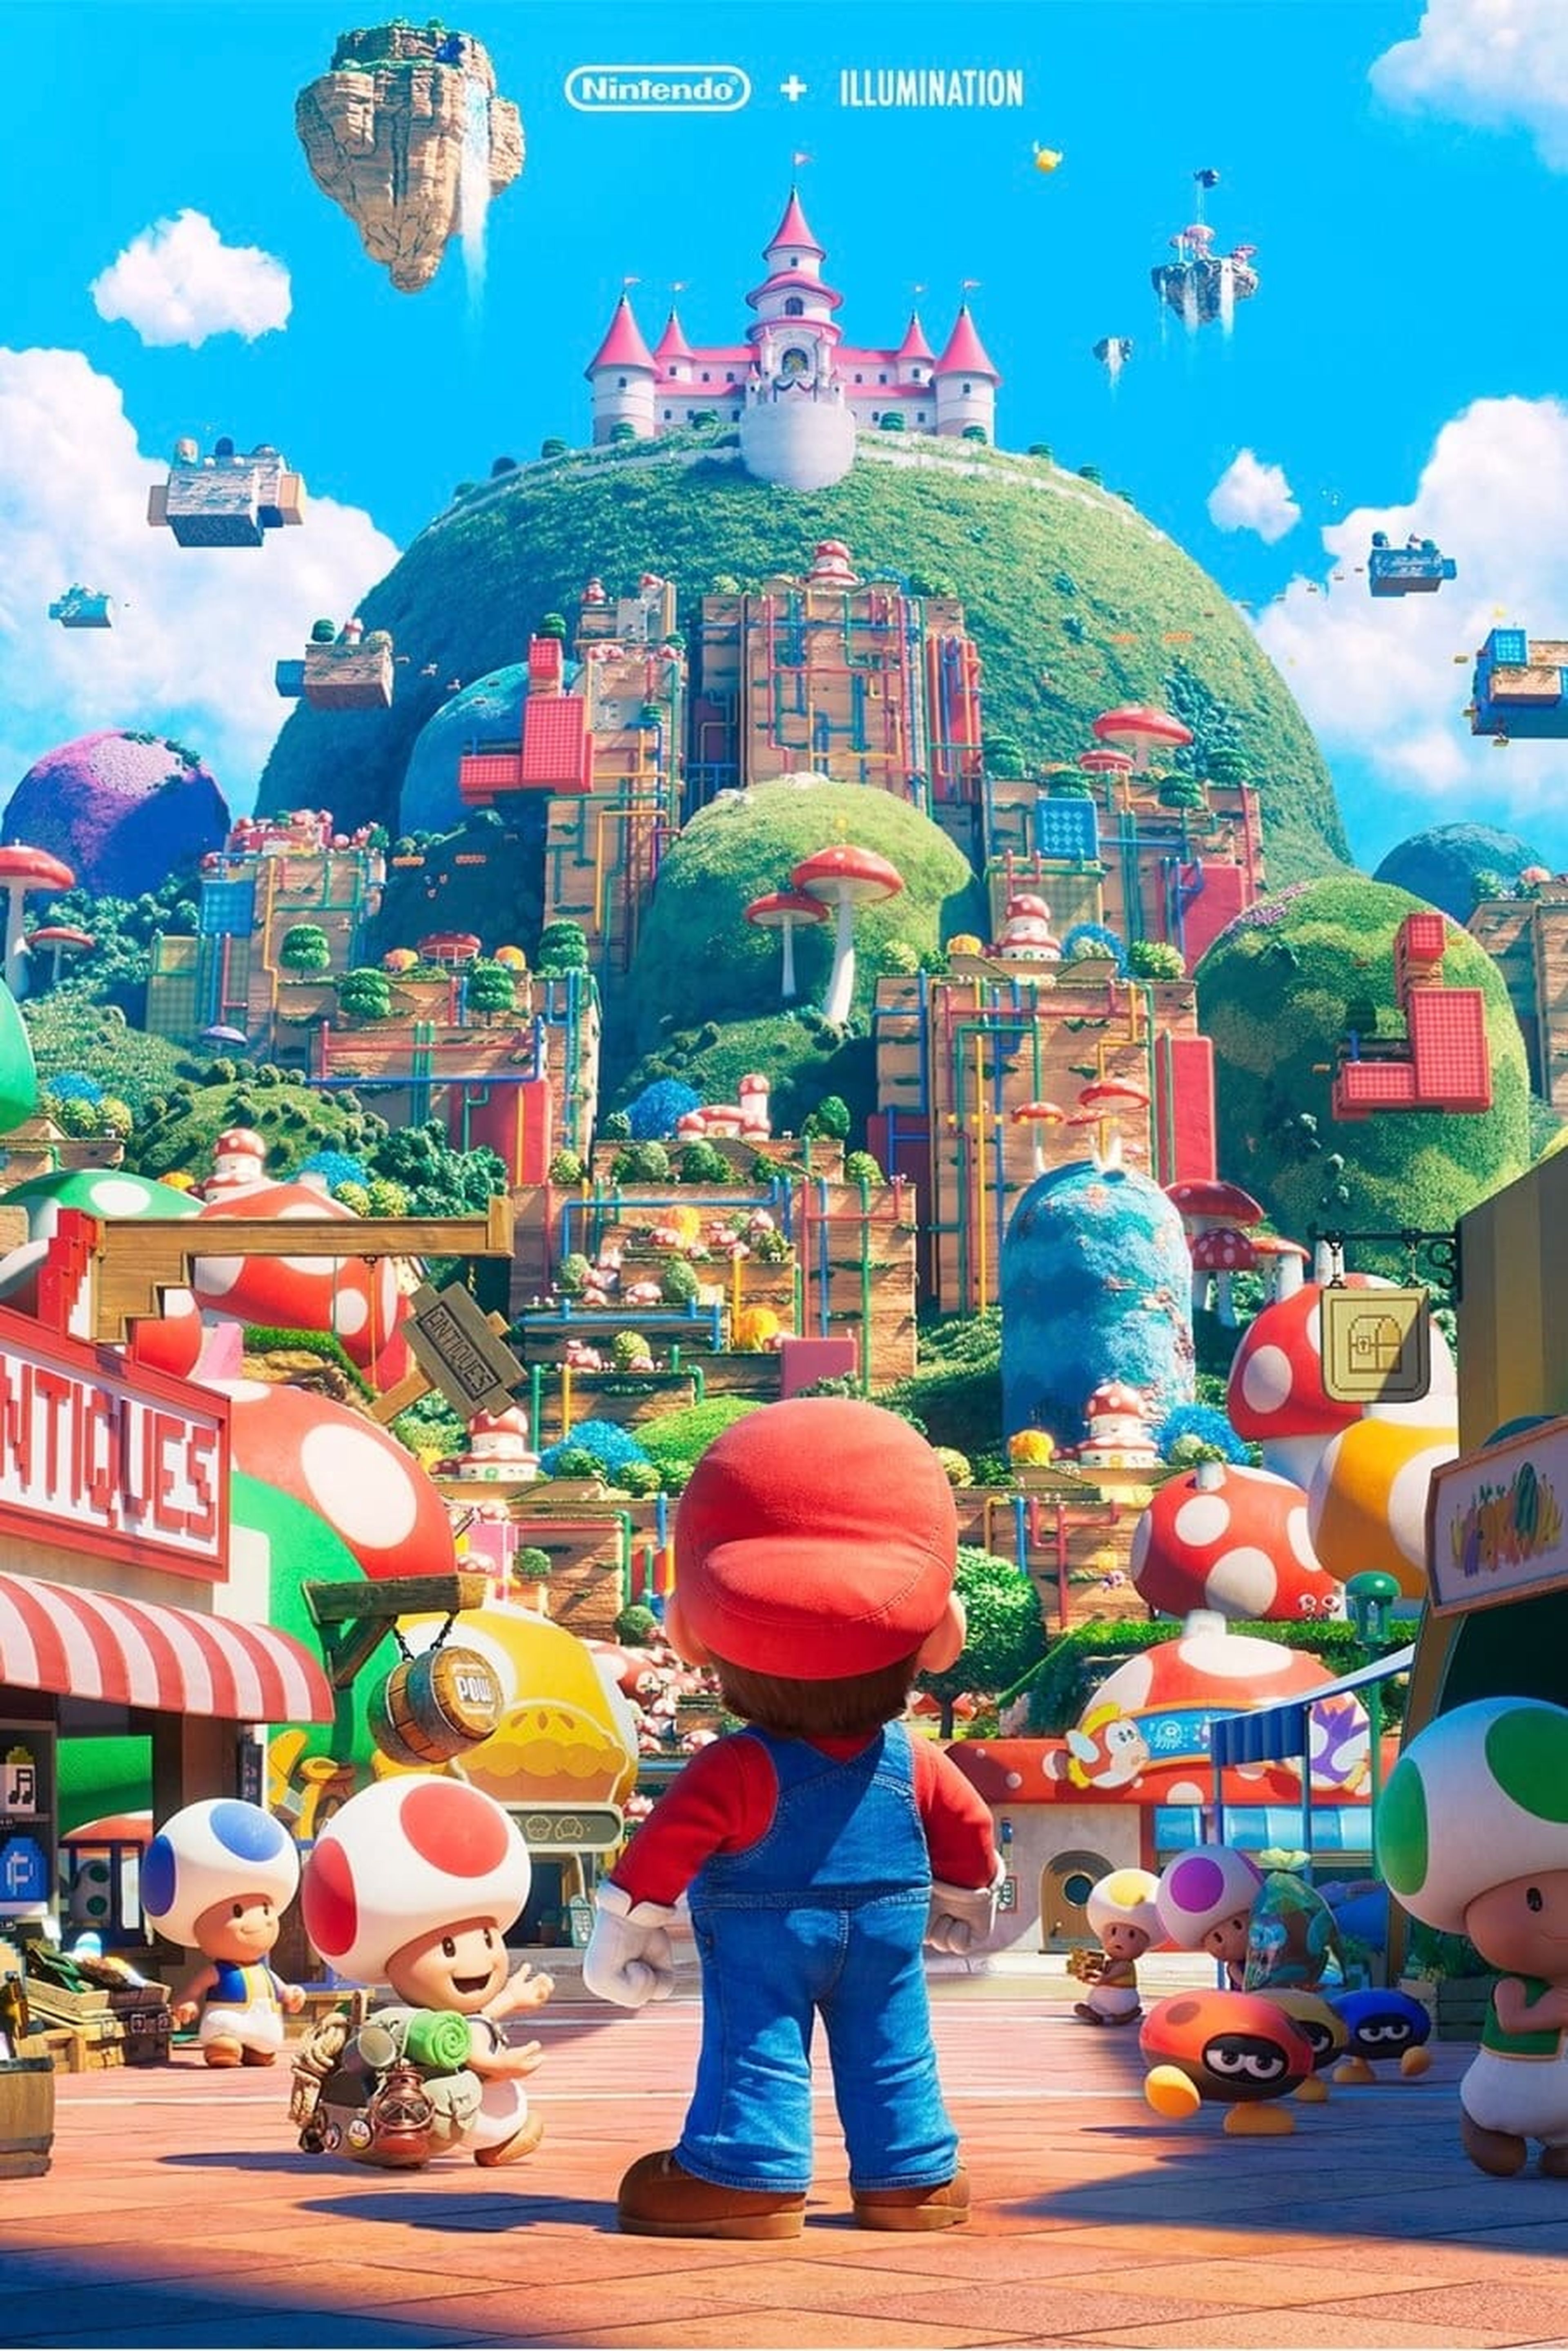 Super Mario Bros: Professora se fantasia de Bowser, canta Peaches em festa  e viraliza - Notícias de cinema - AdoroCinema